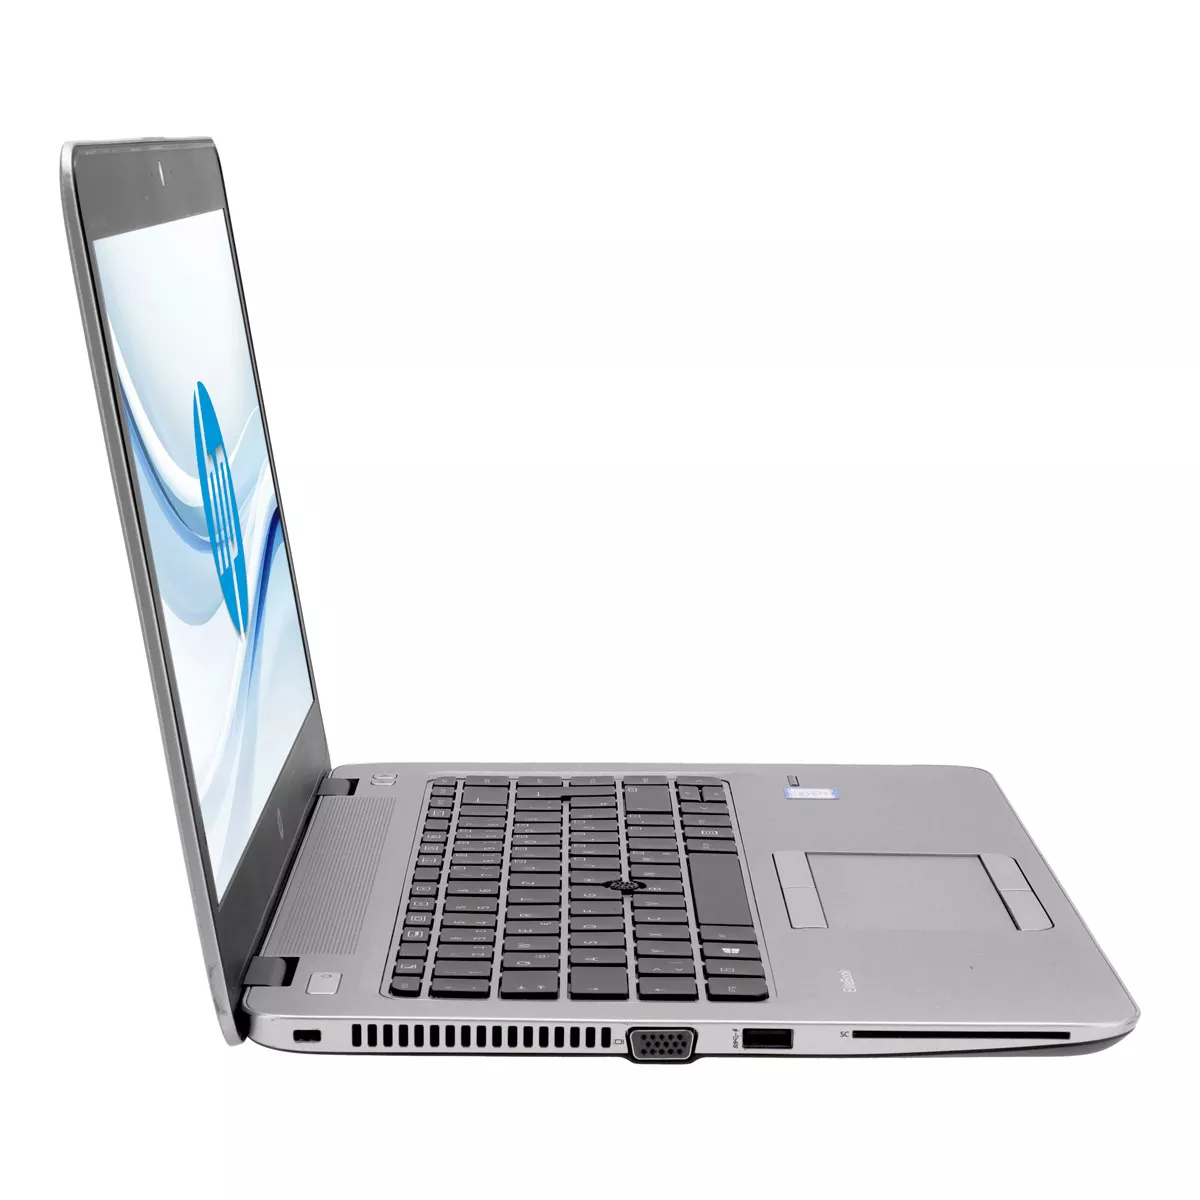 HP EliteBook 840 G3 Core i5 6300U 2,40 GHz 8 GB 240 GB Webcam A+